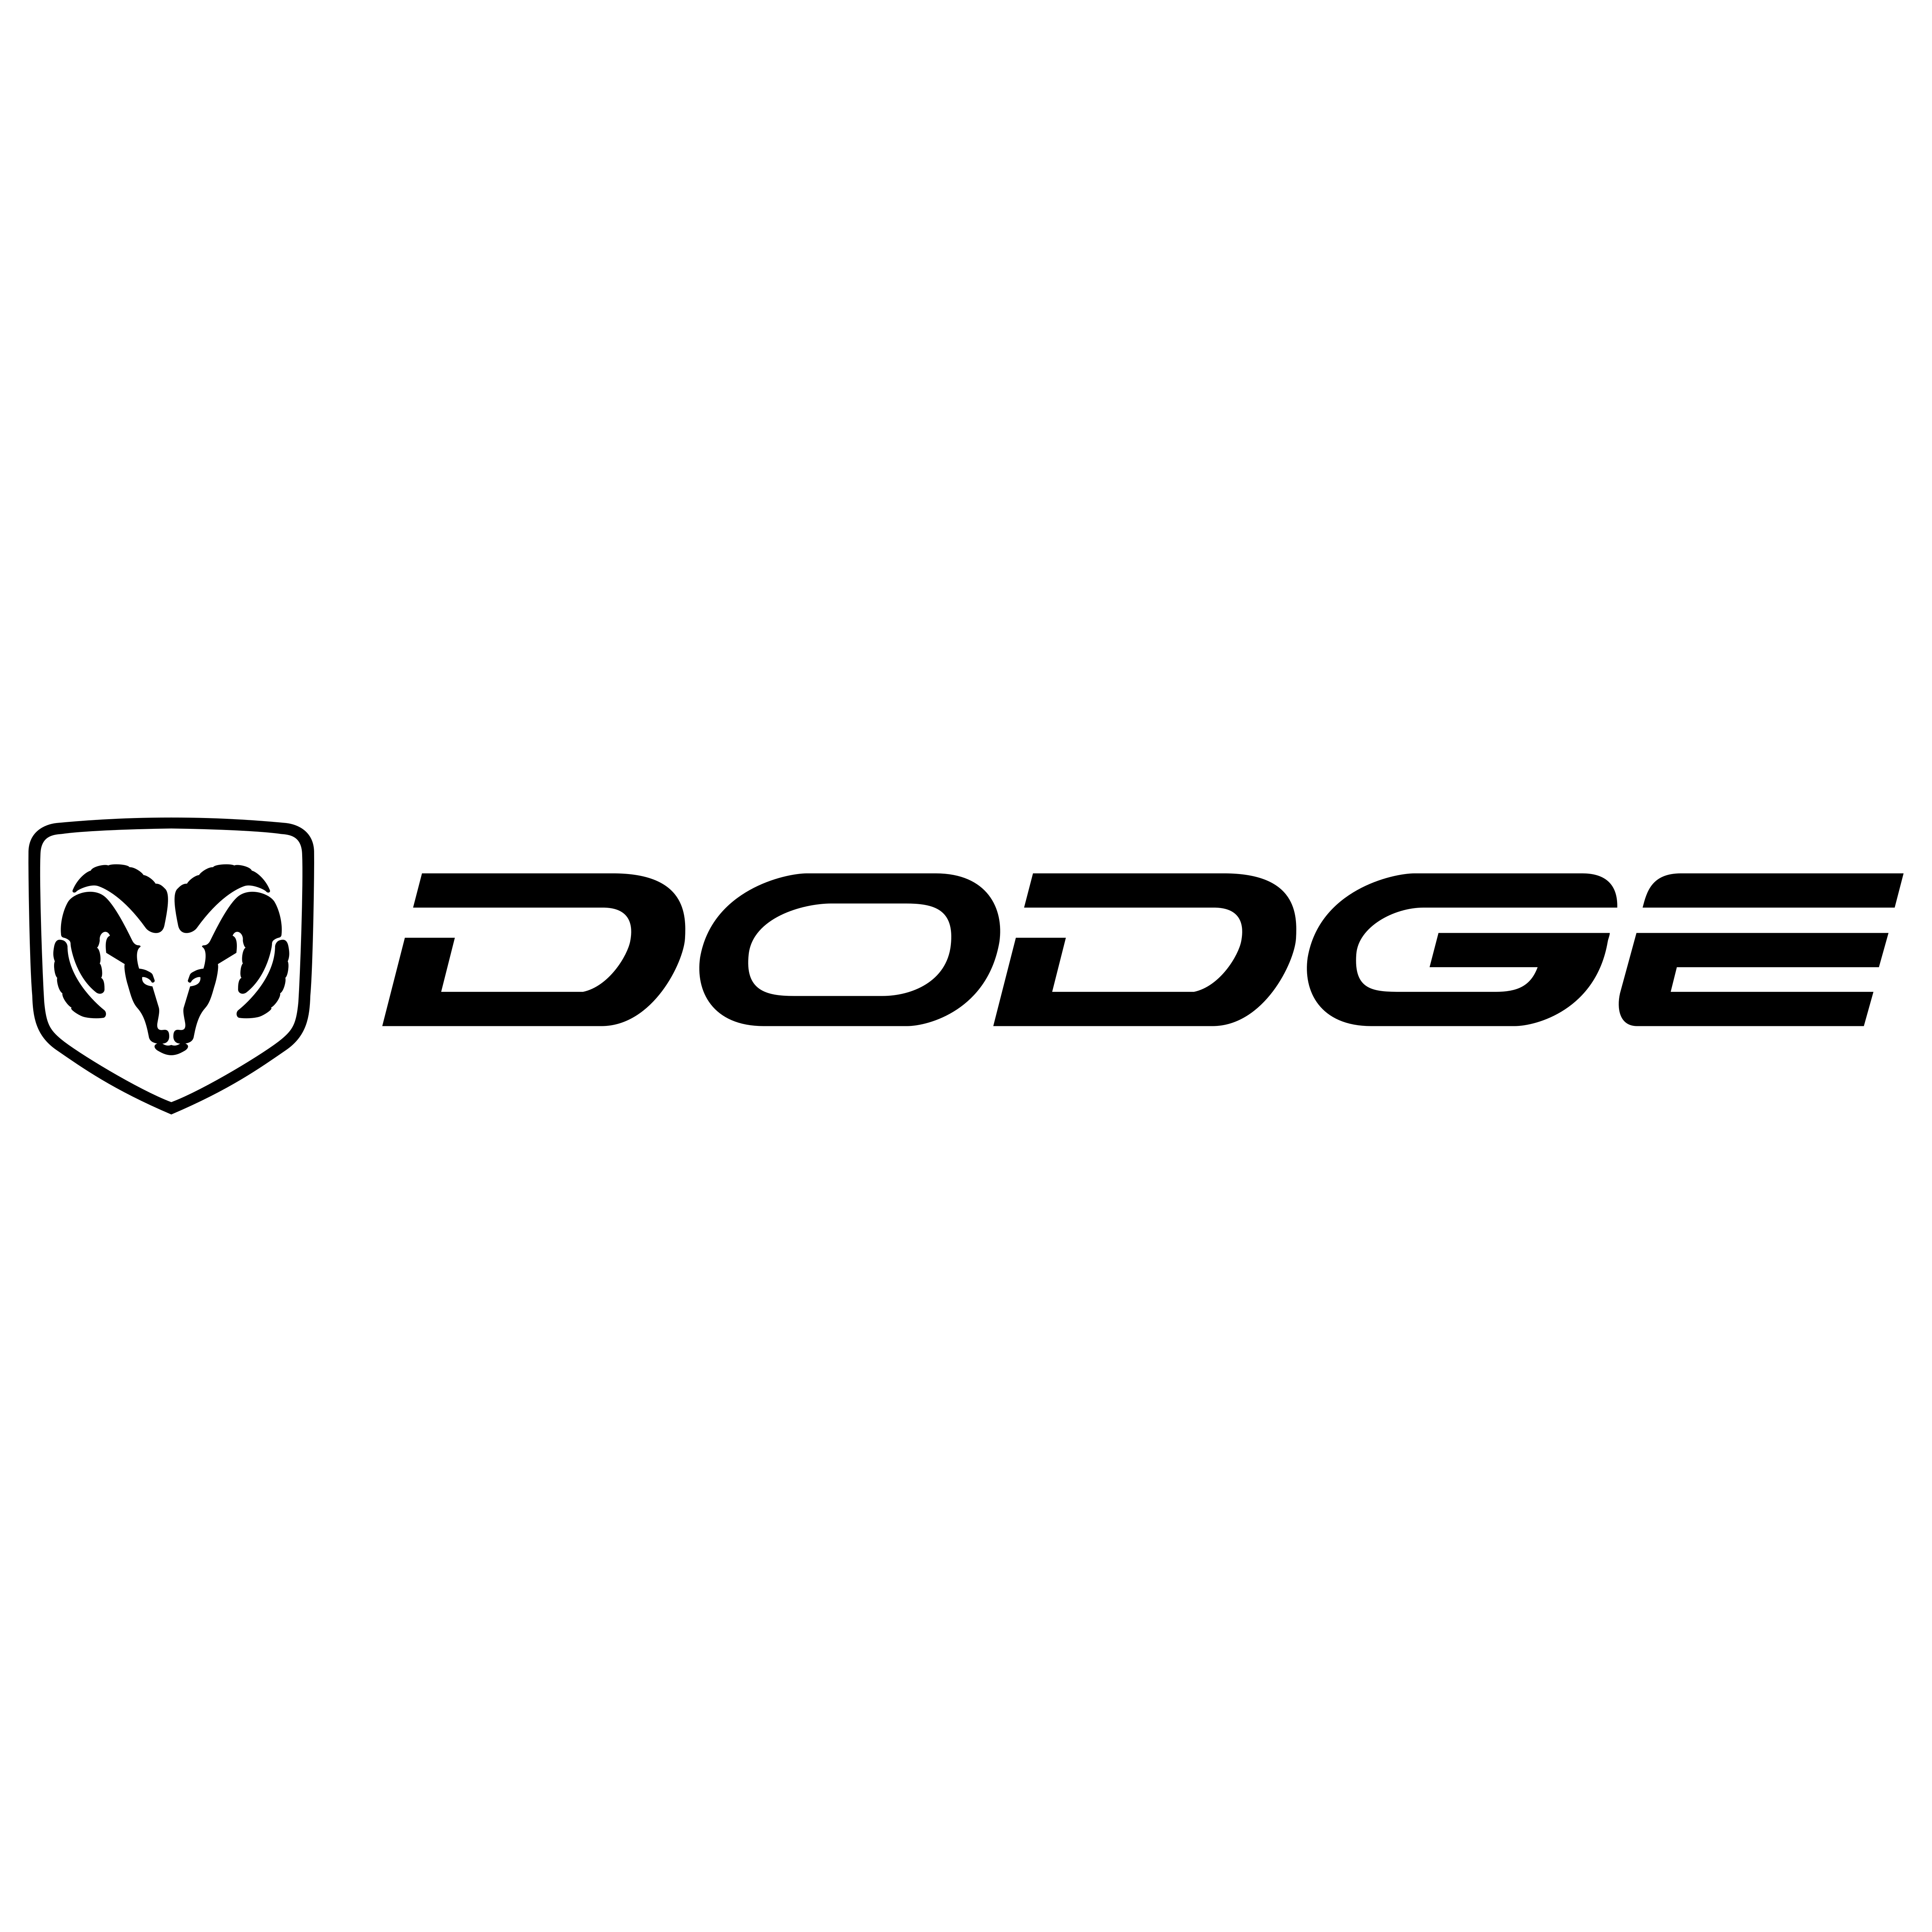 Old Dodge Logo - Dodge logo old – Logos Download